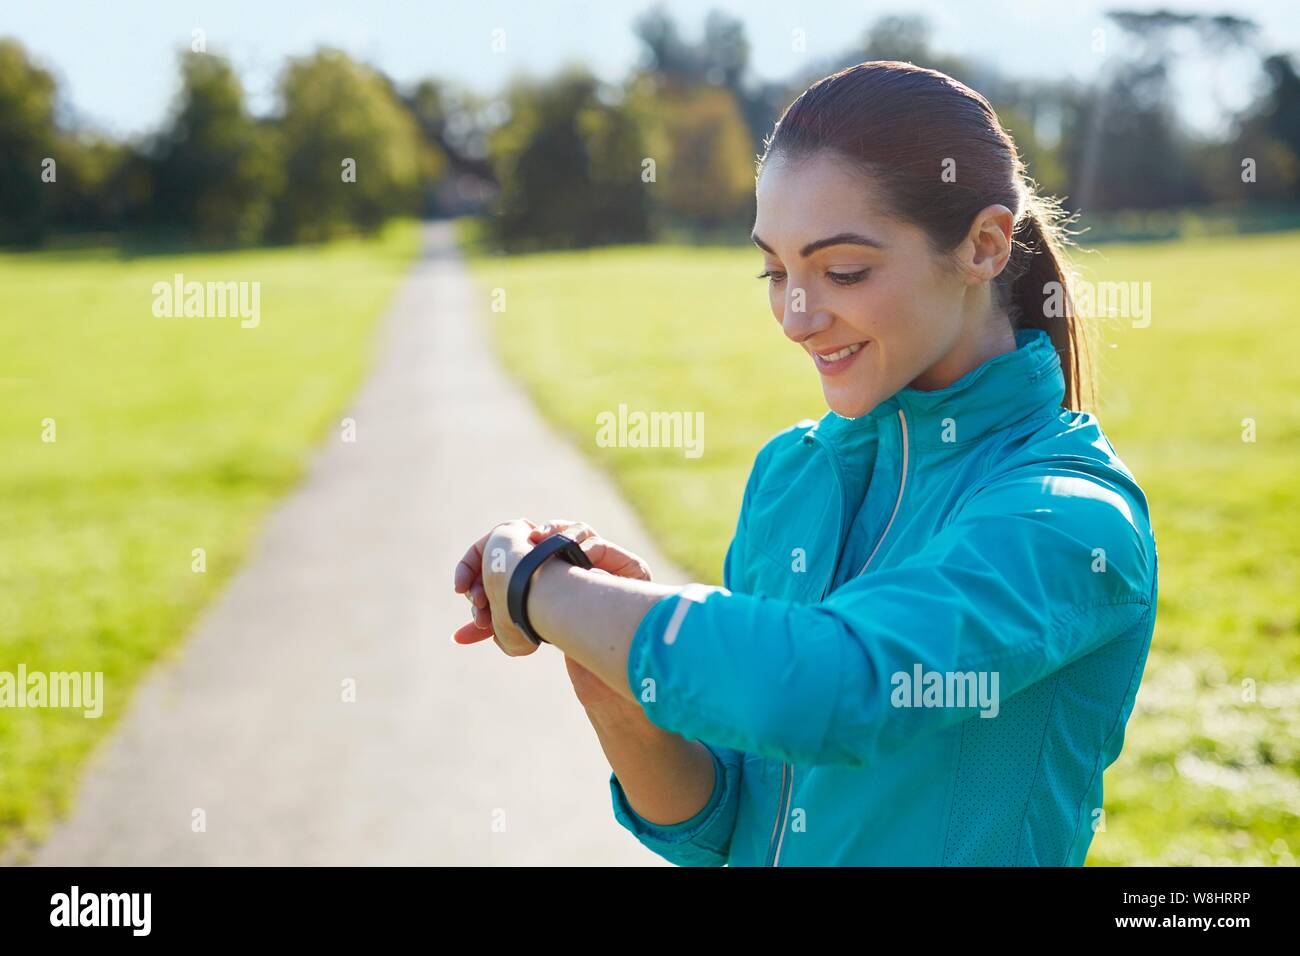 Junge Frau trägt Sport Kleidung Kontrolle ihre Uhr. Stockfoto